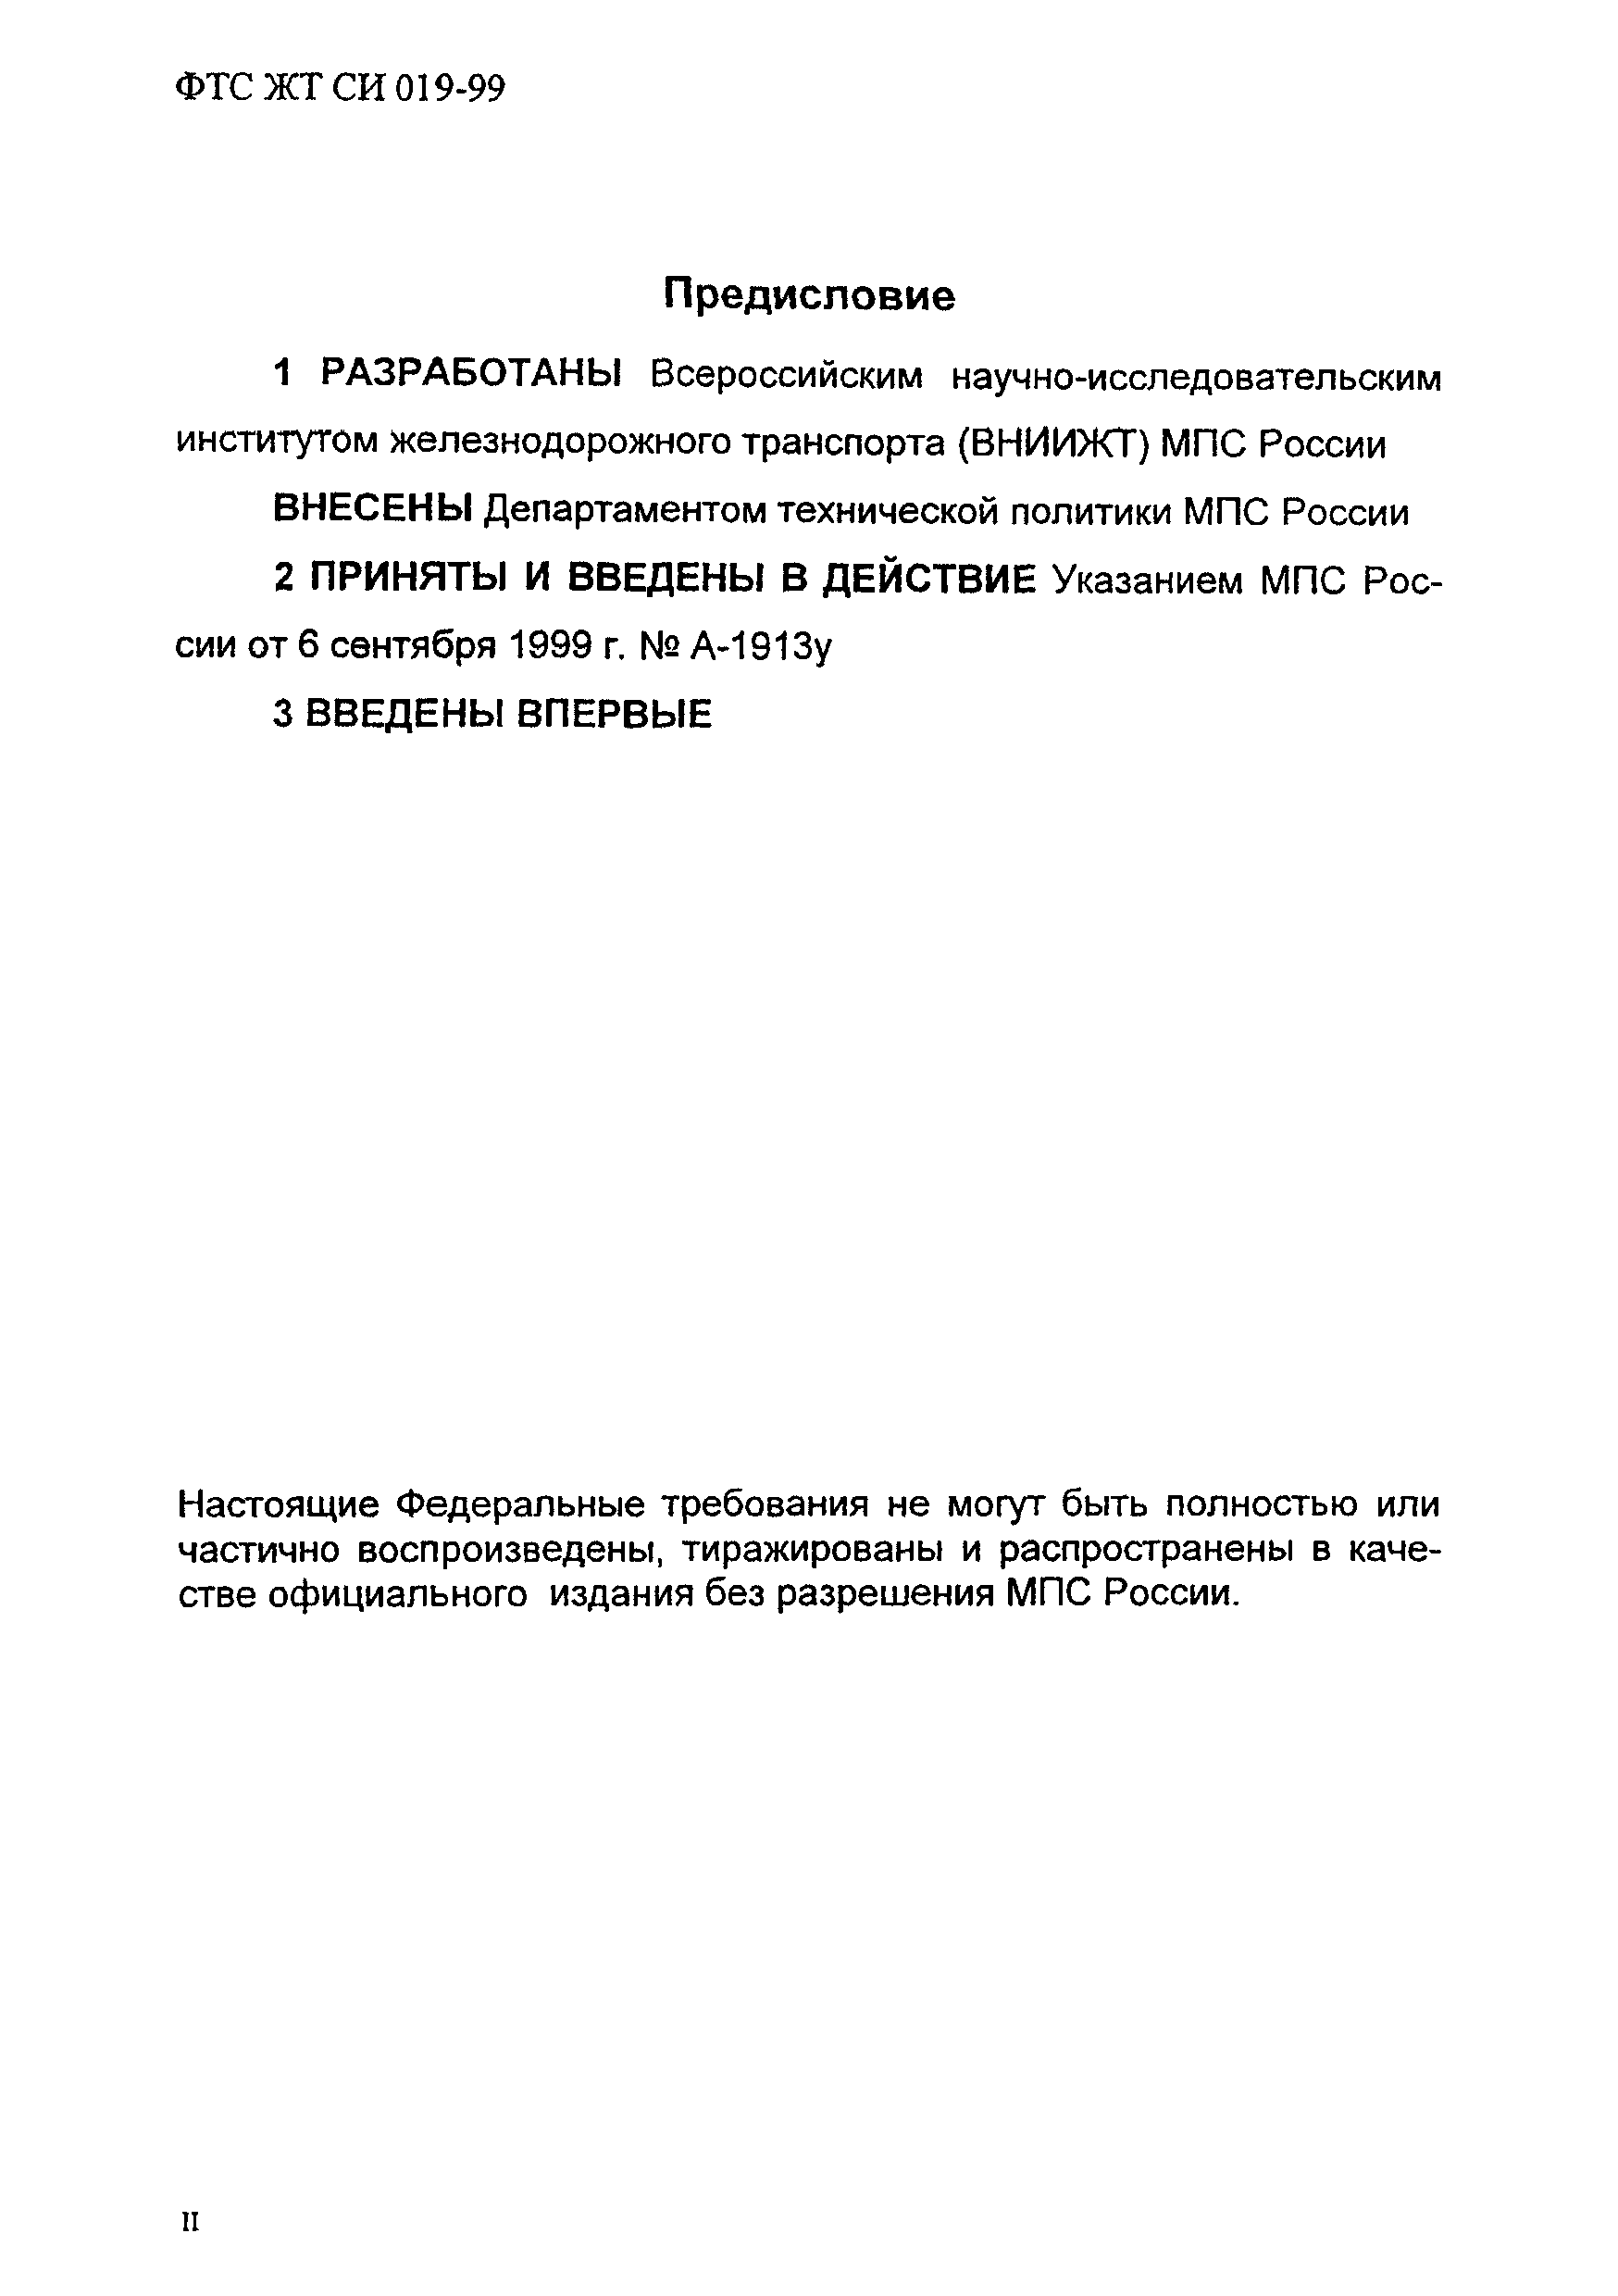 ФТС ЖТ СИ 019-99